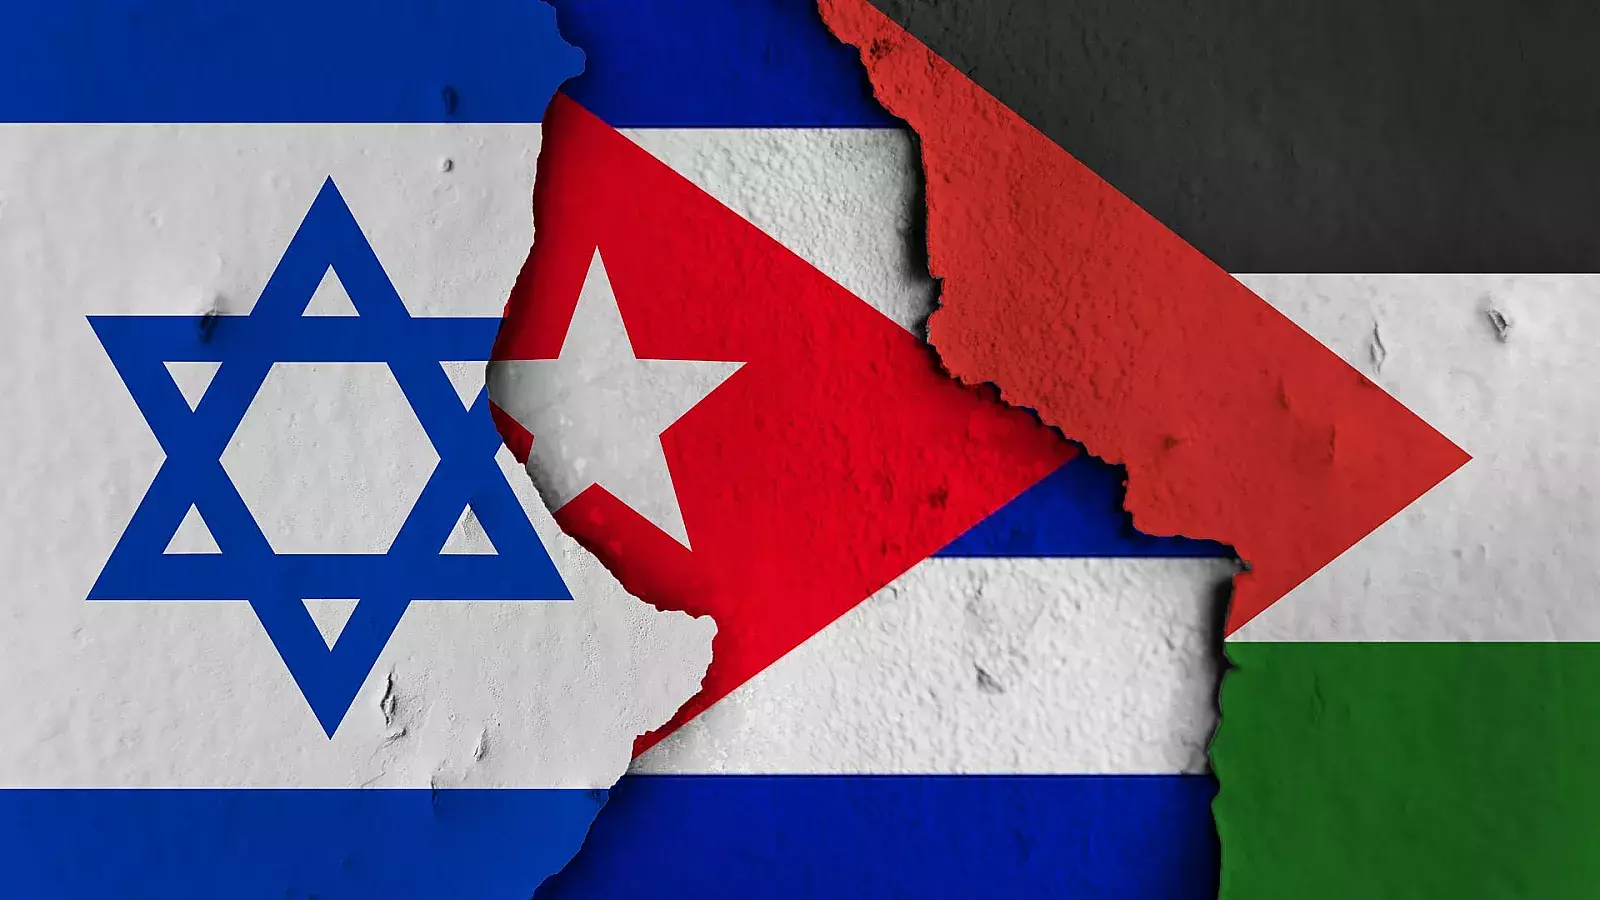 Pronunciamientos del régimen cubano durante conflicto Israel-Palestina